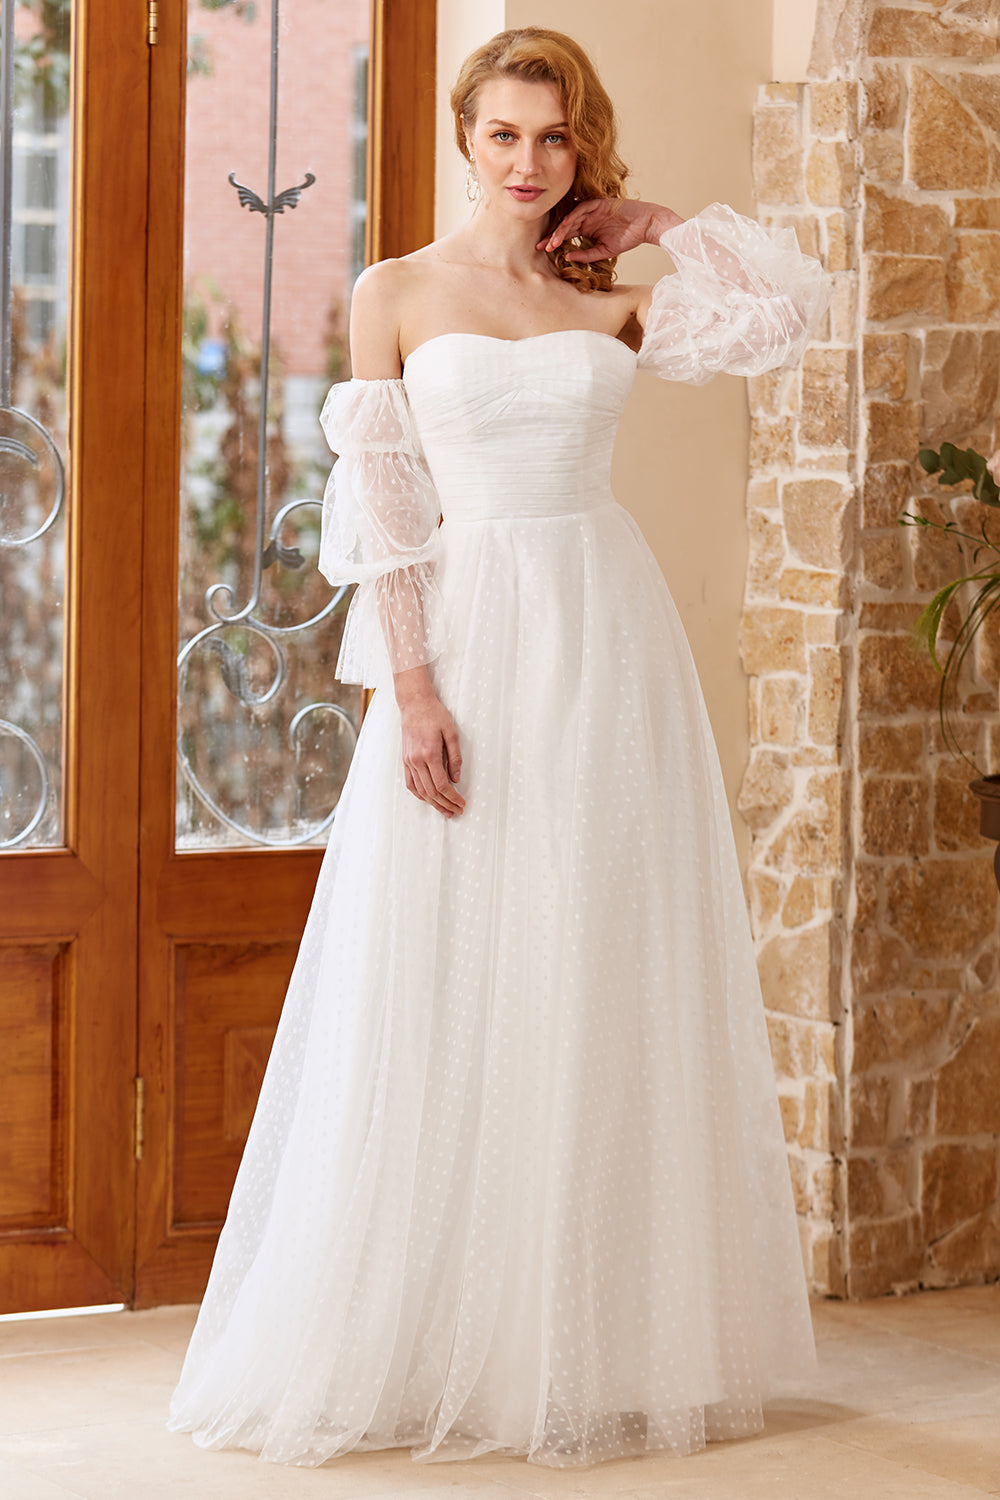 Ein schulterfreies weißes Brautkleid mit langen Ärmeln